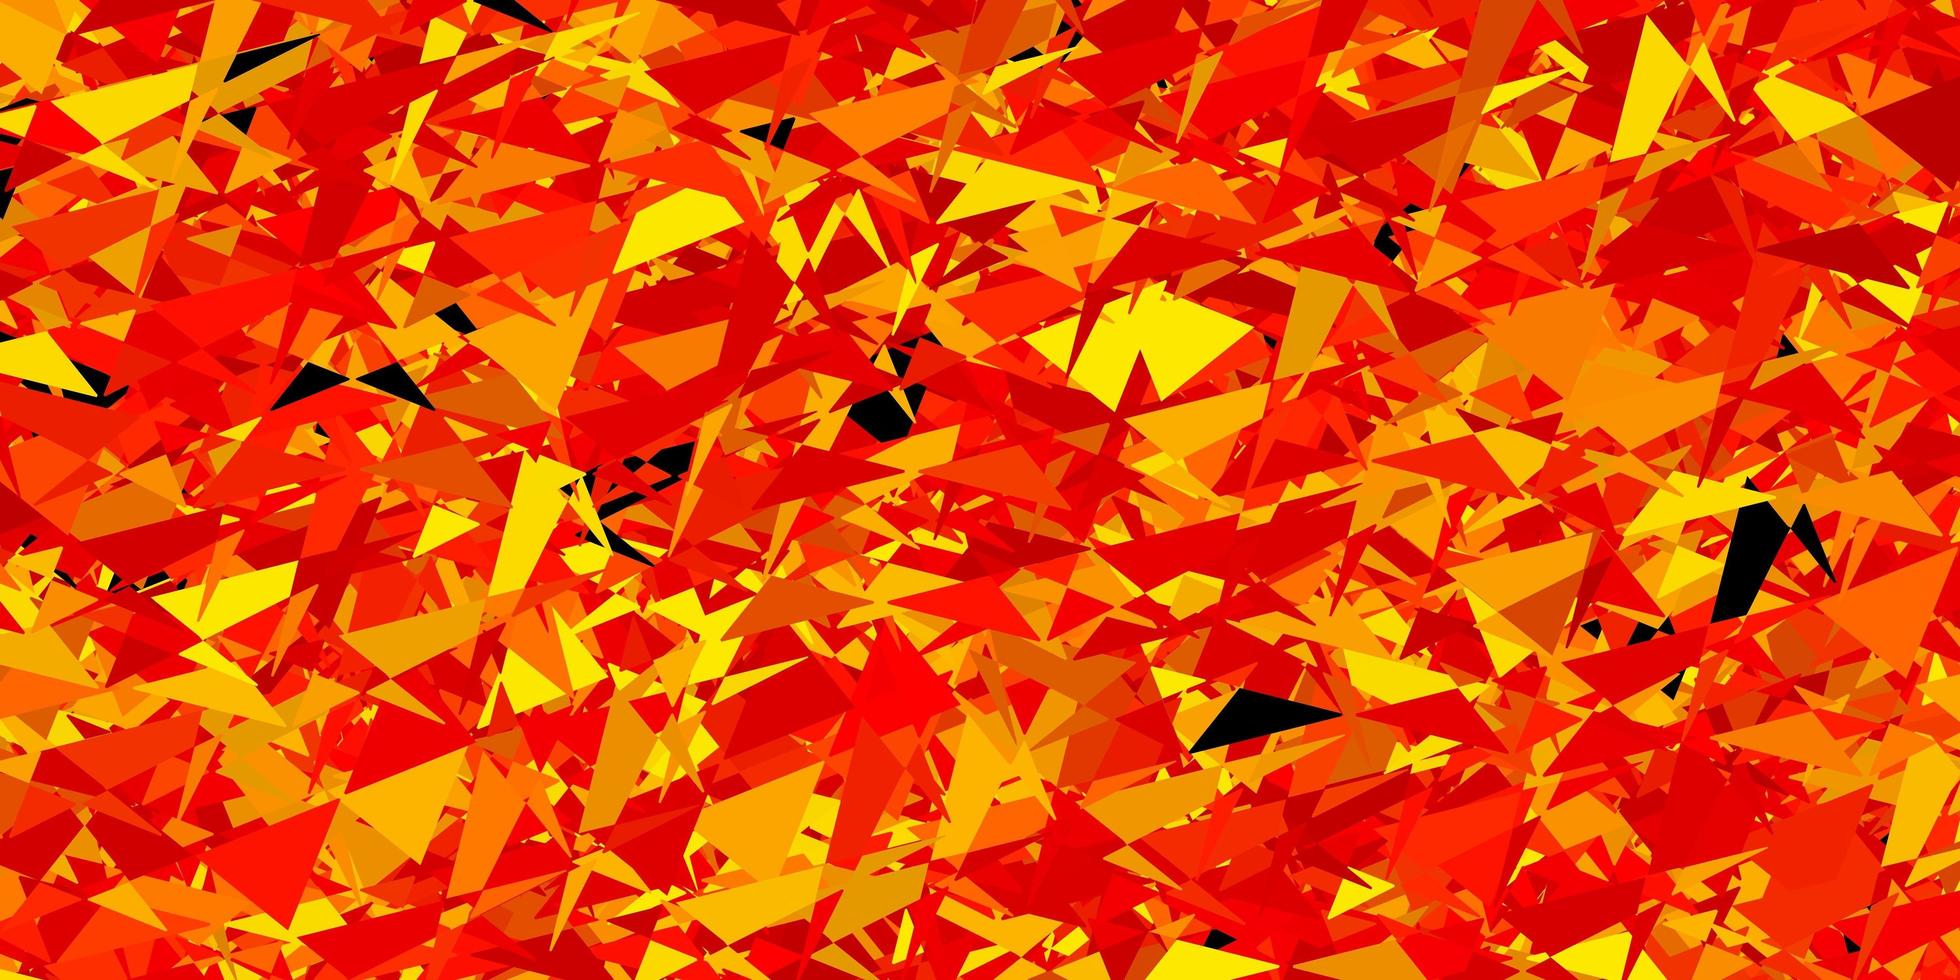 sfondo vettoriale arancione chiaro con triangoli